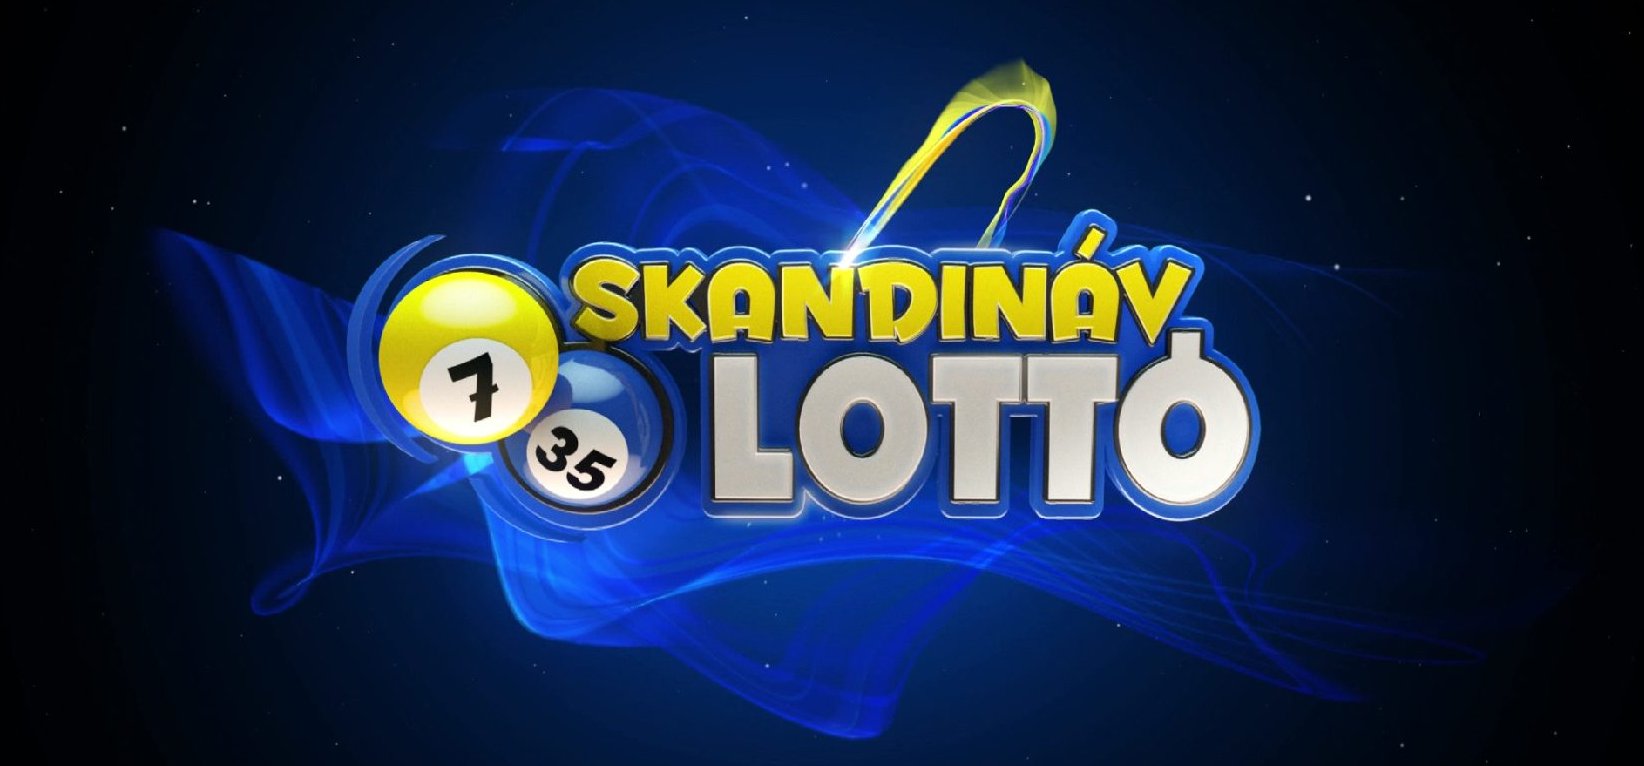 Nagy változás lesz a Skandináv lottónál, amiről minden magyar szerencsejátékosnak tudnia kell